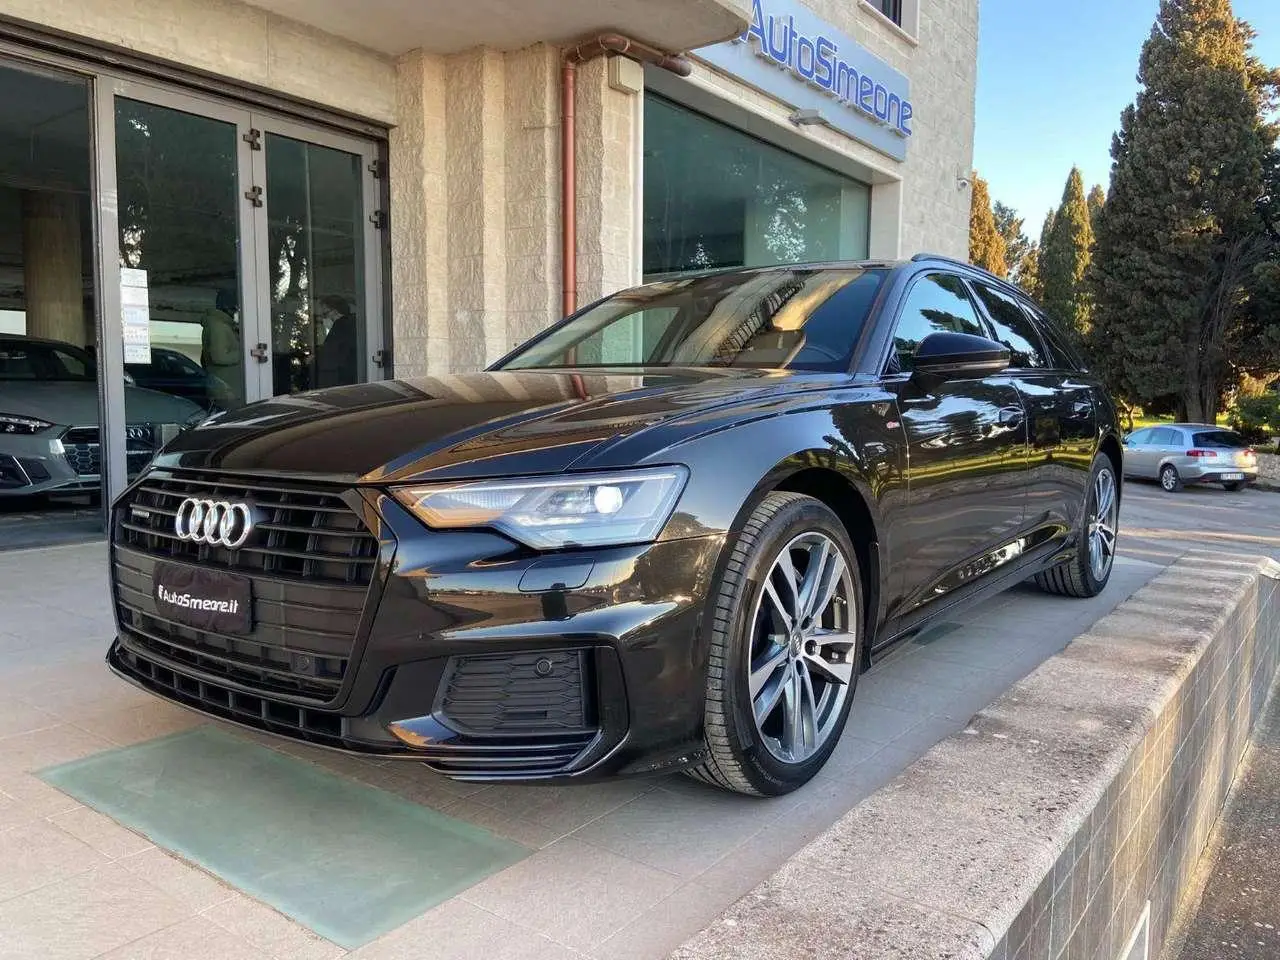 Photo 1 : Audi A6 2018 Hybrid